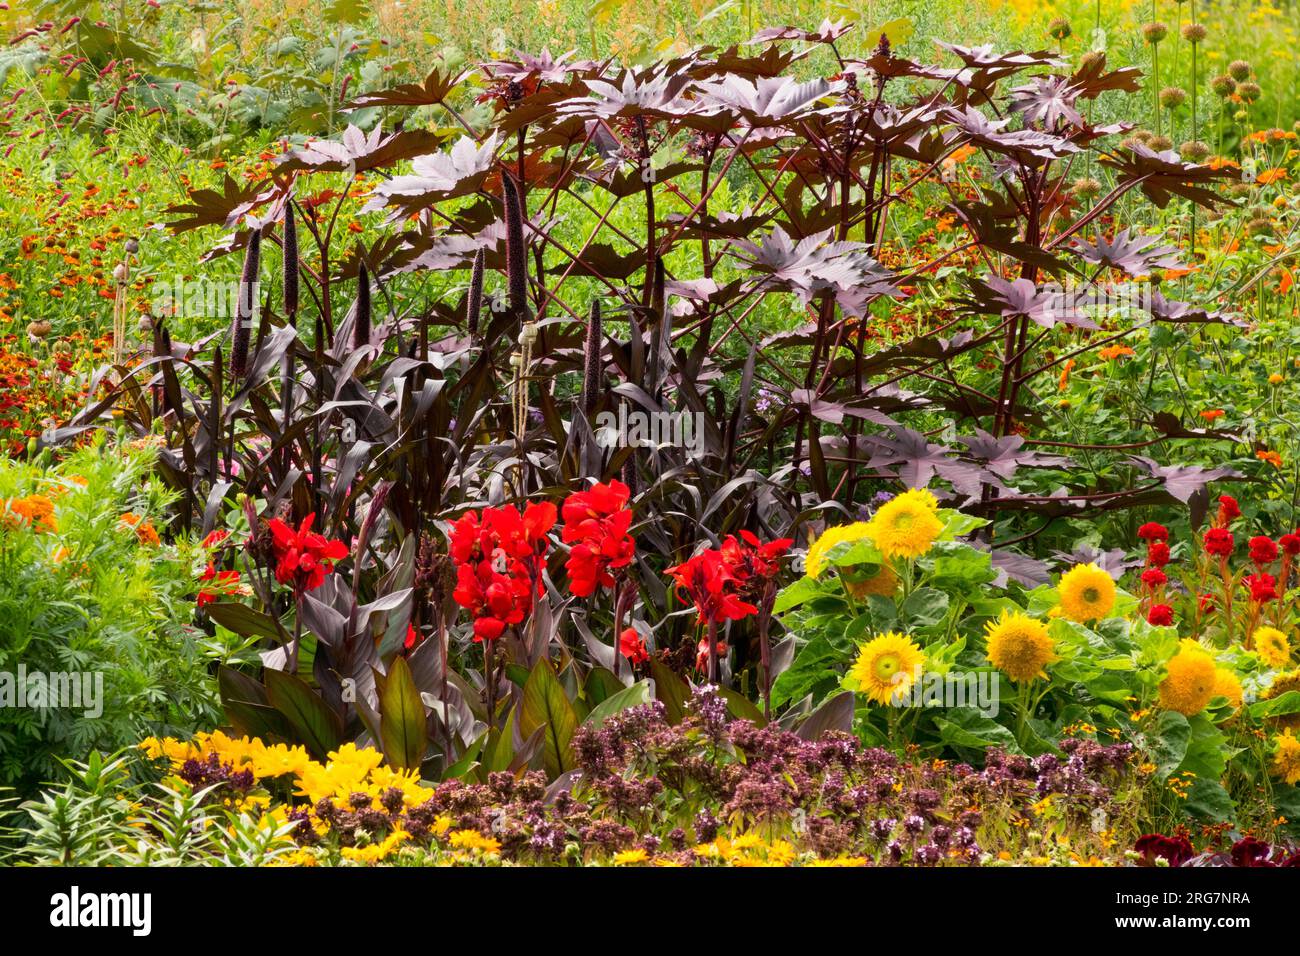 Fiori colorati orti annuali e piante perenni giallo, viola rosso canna girasoli olio di ricino miglio in un giardino di metà estate Foto Stock